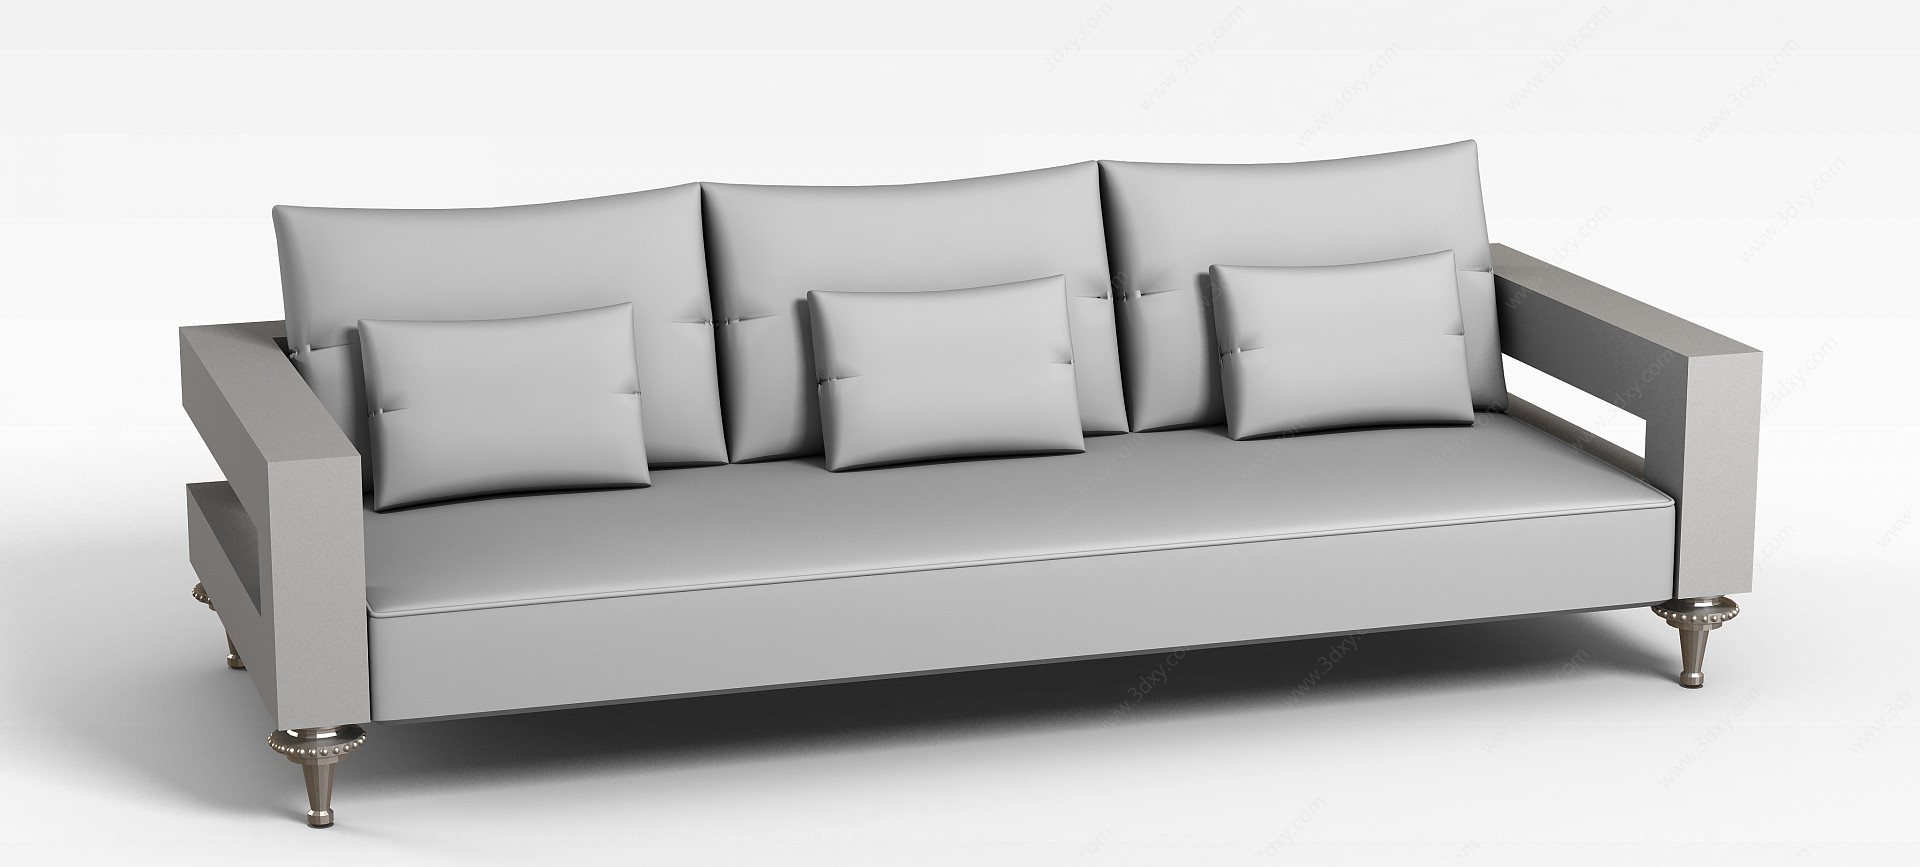 俄罗斯多人沙发3D模型